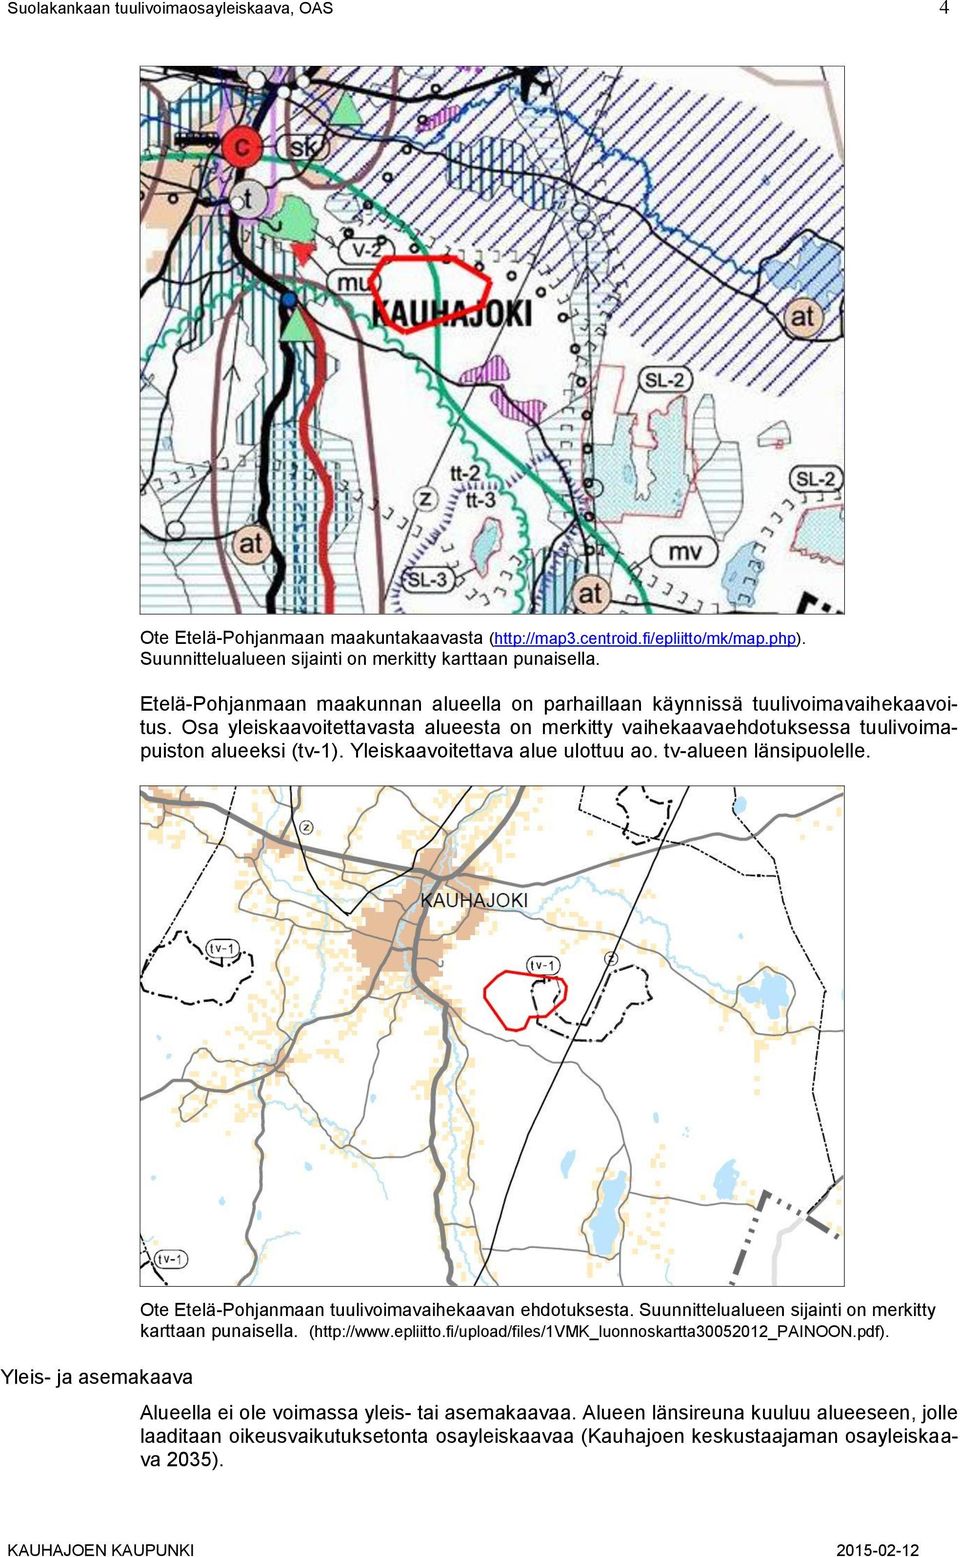 Yleiskaavoitettava alue ulottuu ao. tv-alueen länsipuolelle. Yleis- ja asemakaava Ote Etelä-Pohjanmaan tuulivoimavaihekaavan ehdotuksesta. Suunnittelualueen sijainti on merkitty karttaan punaisella.